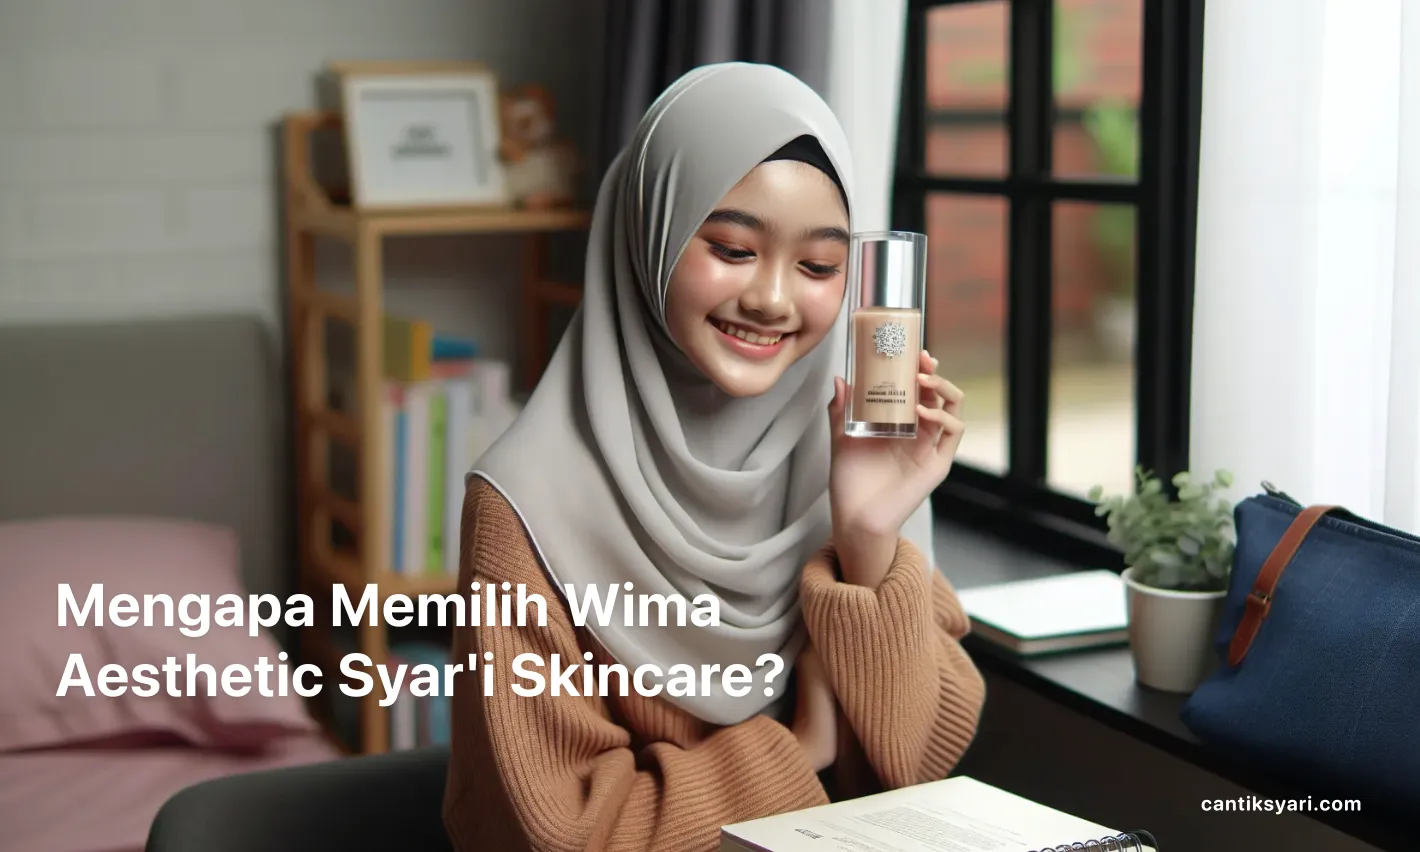 Mengapa Memilih Wima Aesthetic Syar'i Skincare?